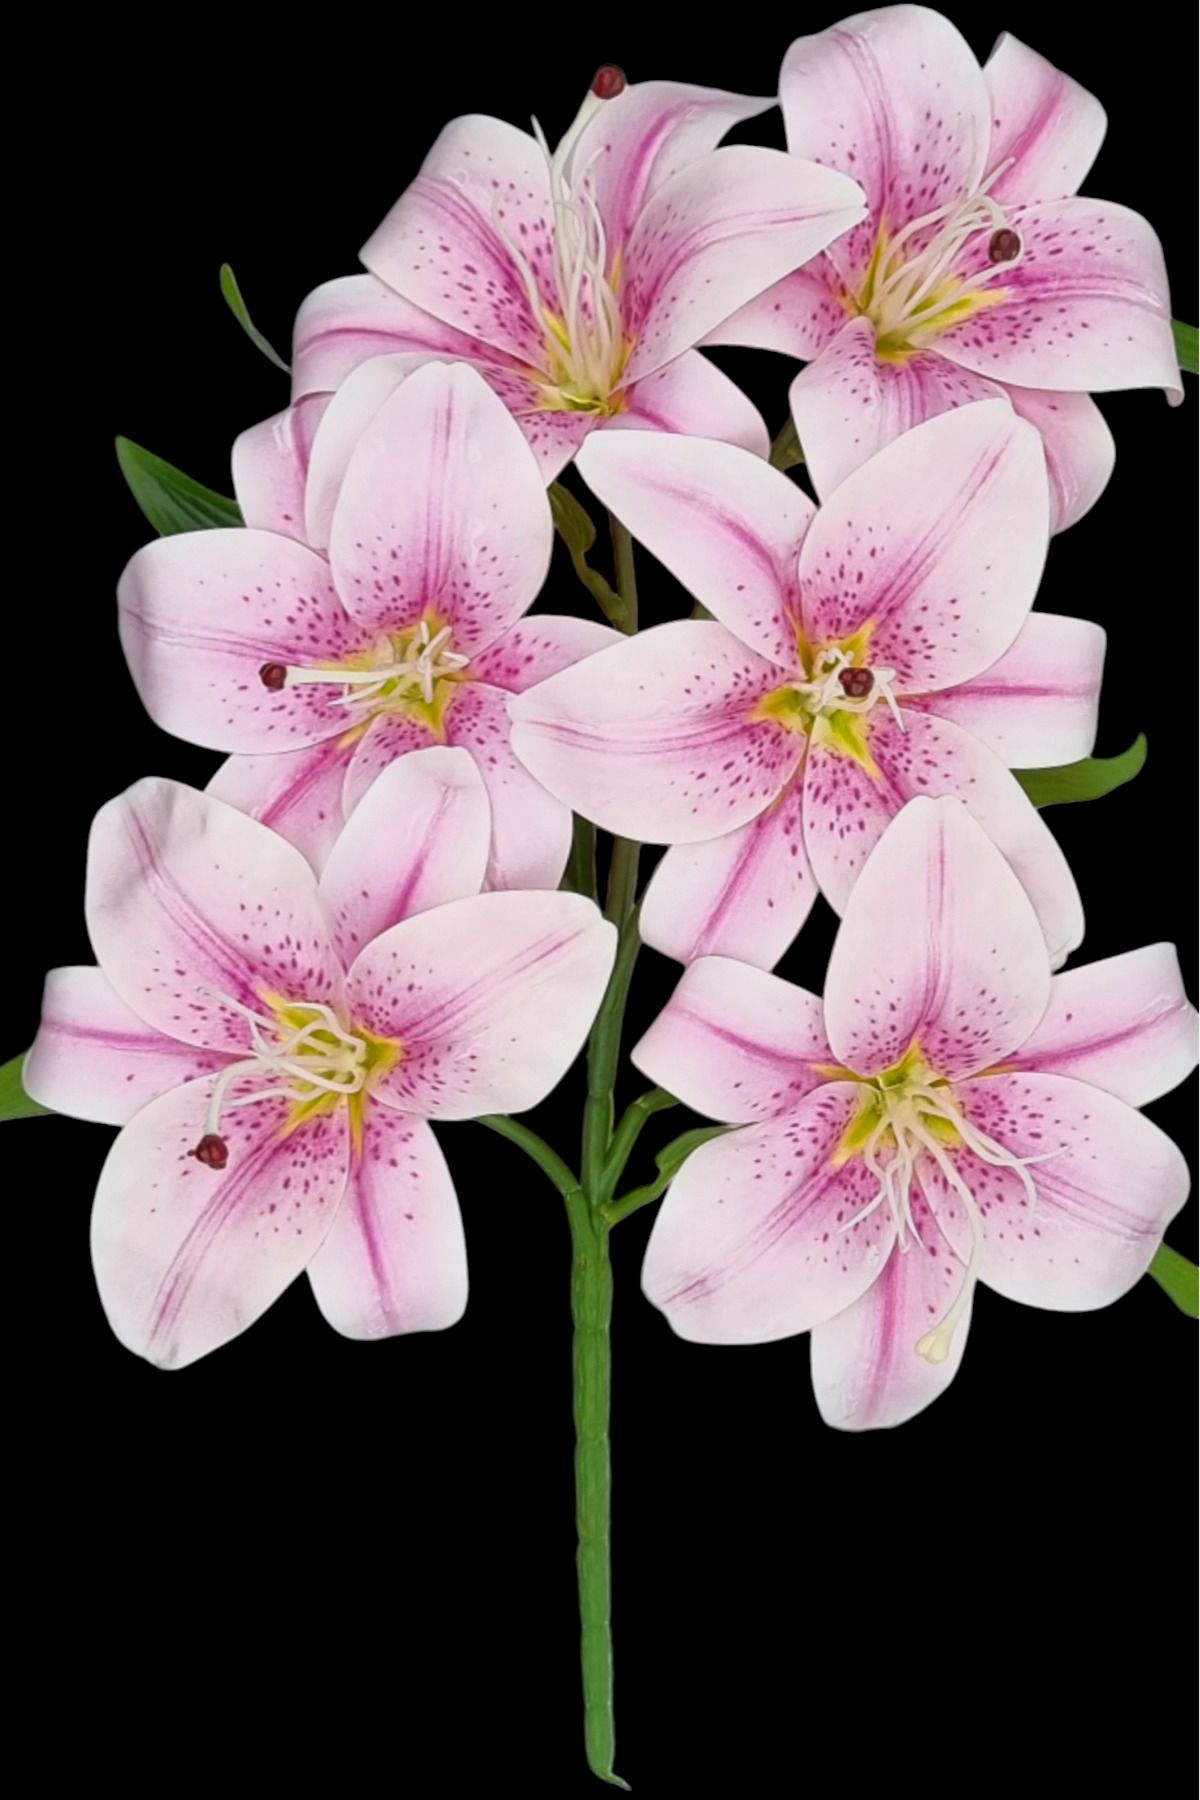 MD Aspiz Flowers Yapay Lüx Lilyum Islak Zambak Çiçeği Kaliteli Kazablanka sarkit salon bitki yaprak orkide GUL EV